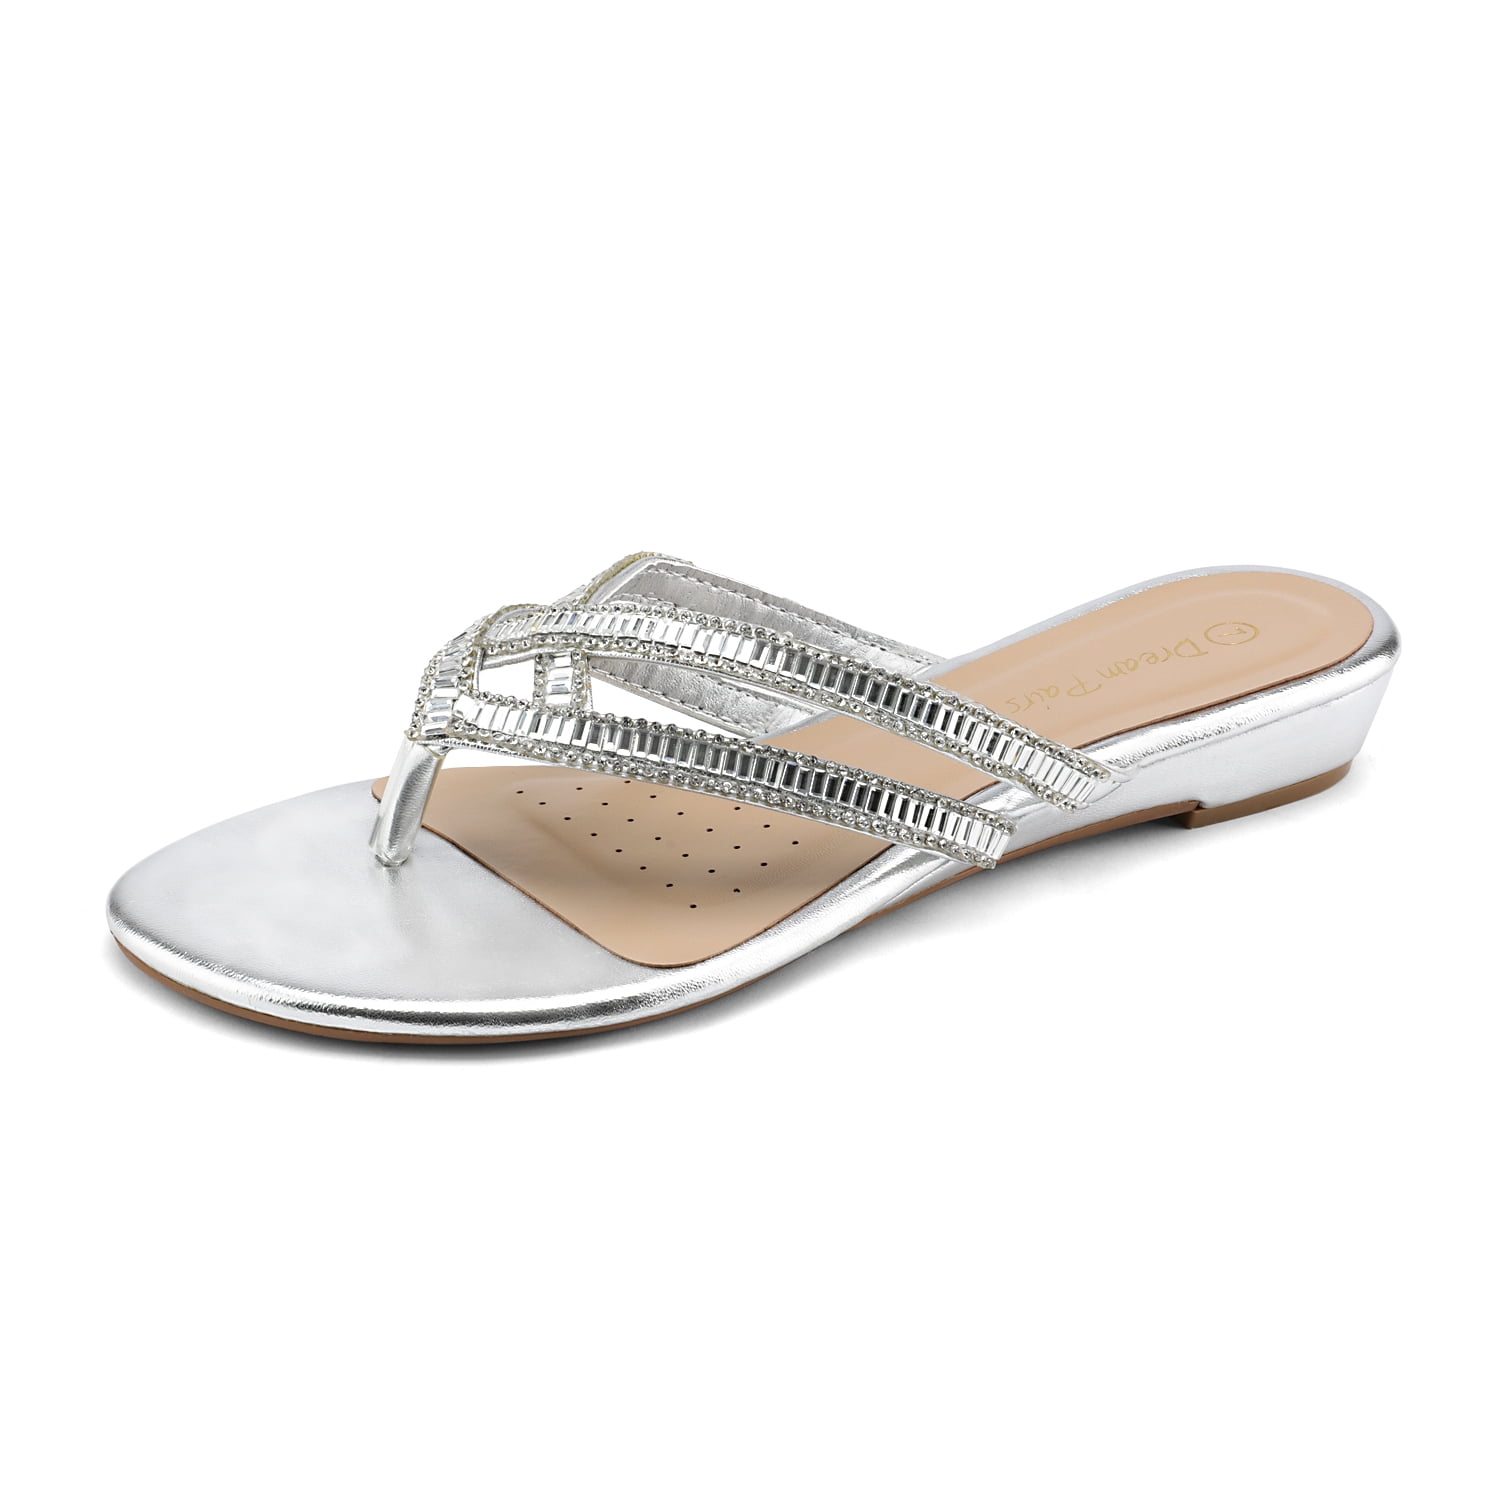 DREAM PAIRS Womens Sparkly Flip Flops Fashion Rhinestones Design Slides Sandals 